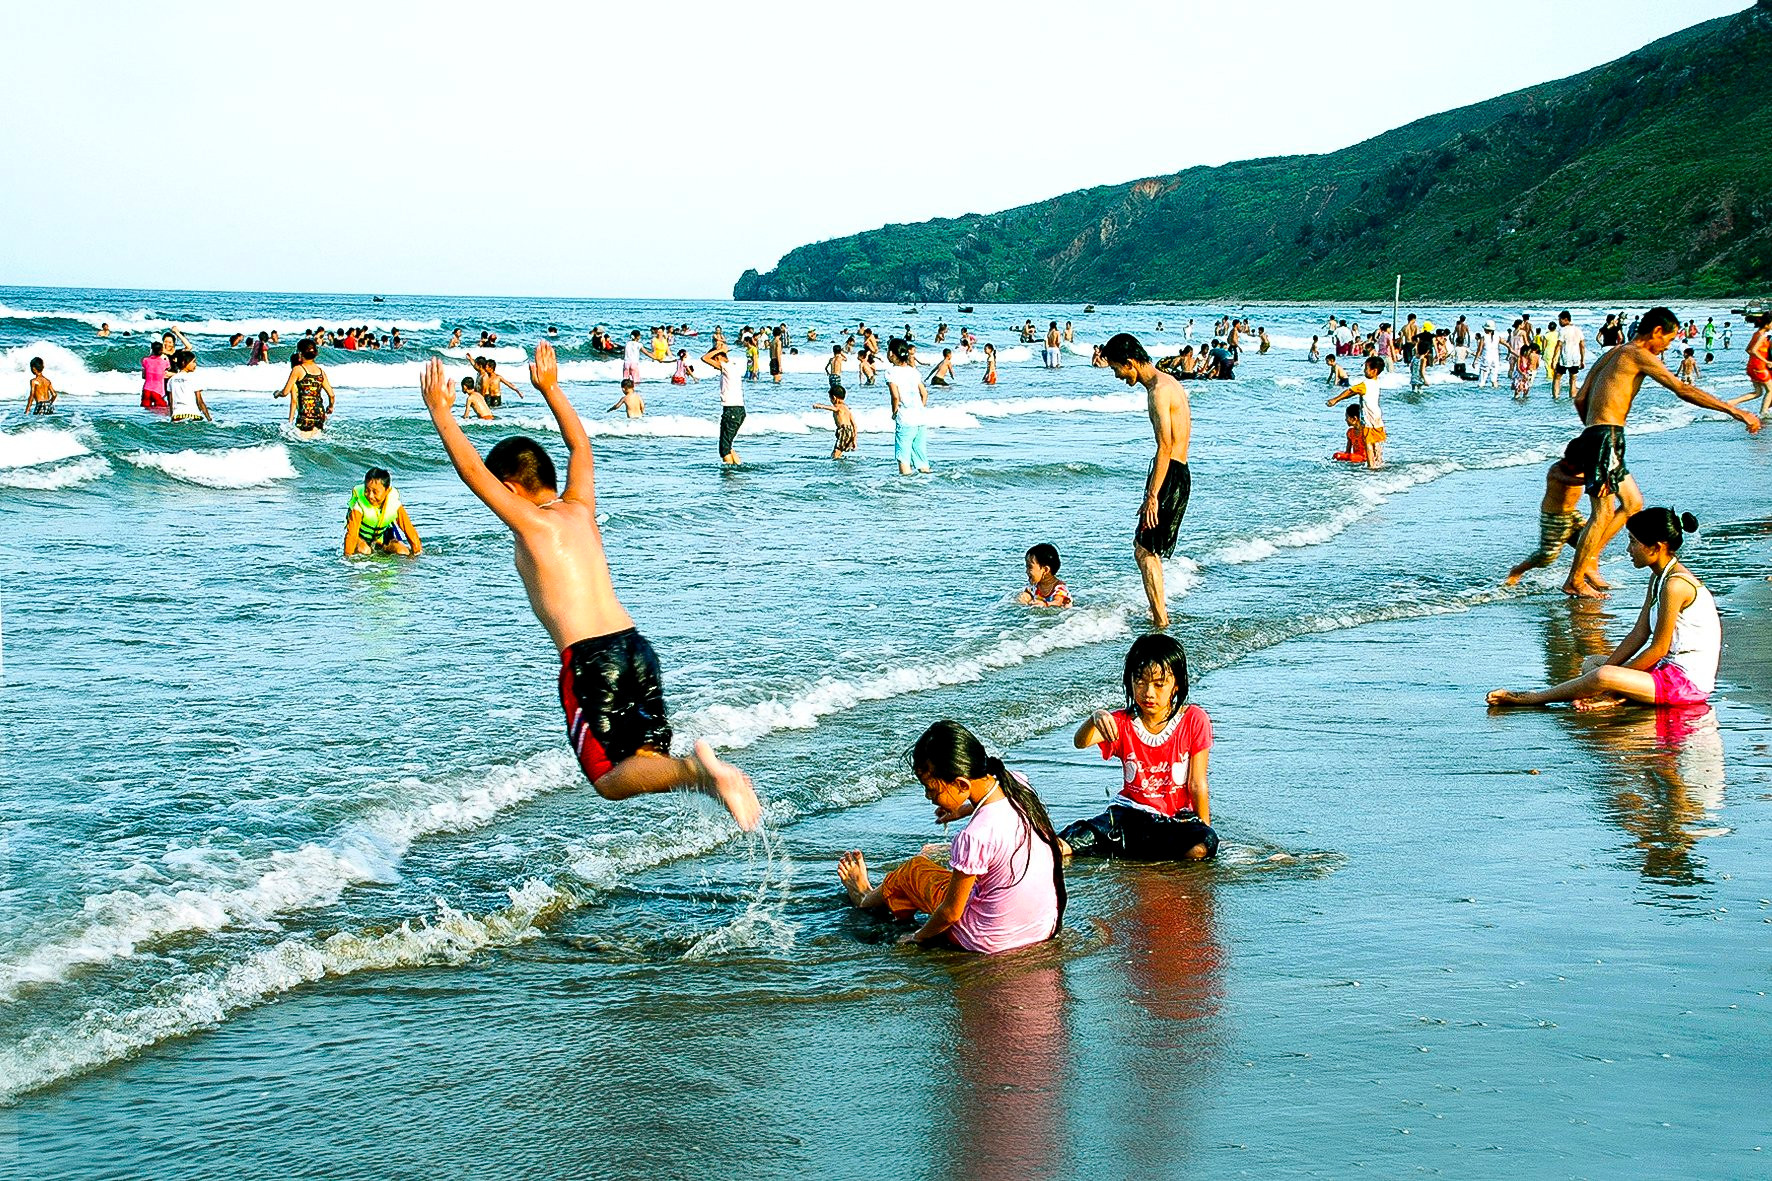 Bãi biển Quỳnh Nghĩa đẹp hiền hoá, rất lý tưởng để tắm biển. Ảnh Nhật Thanh (2).jpg